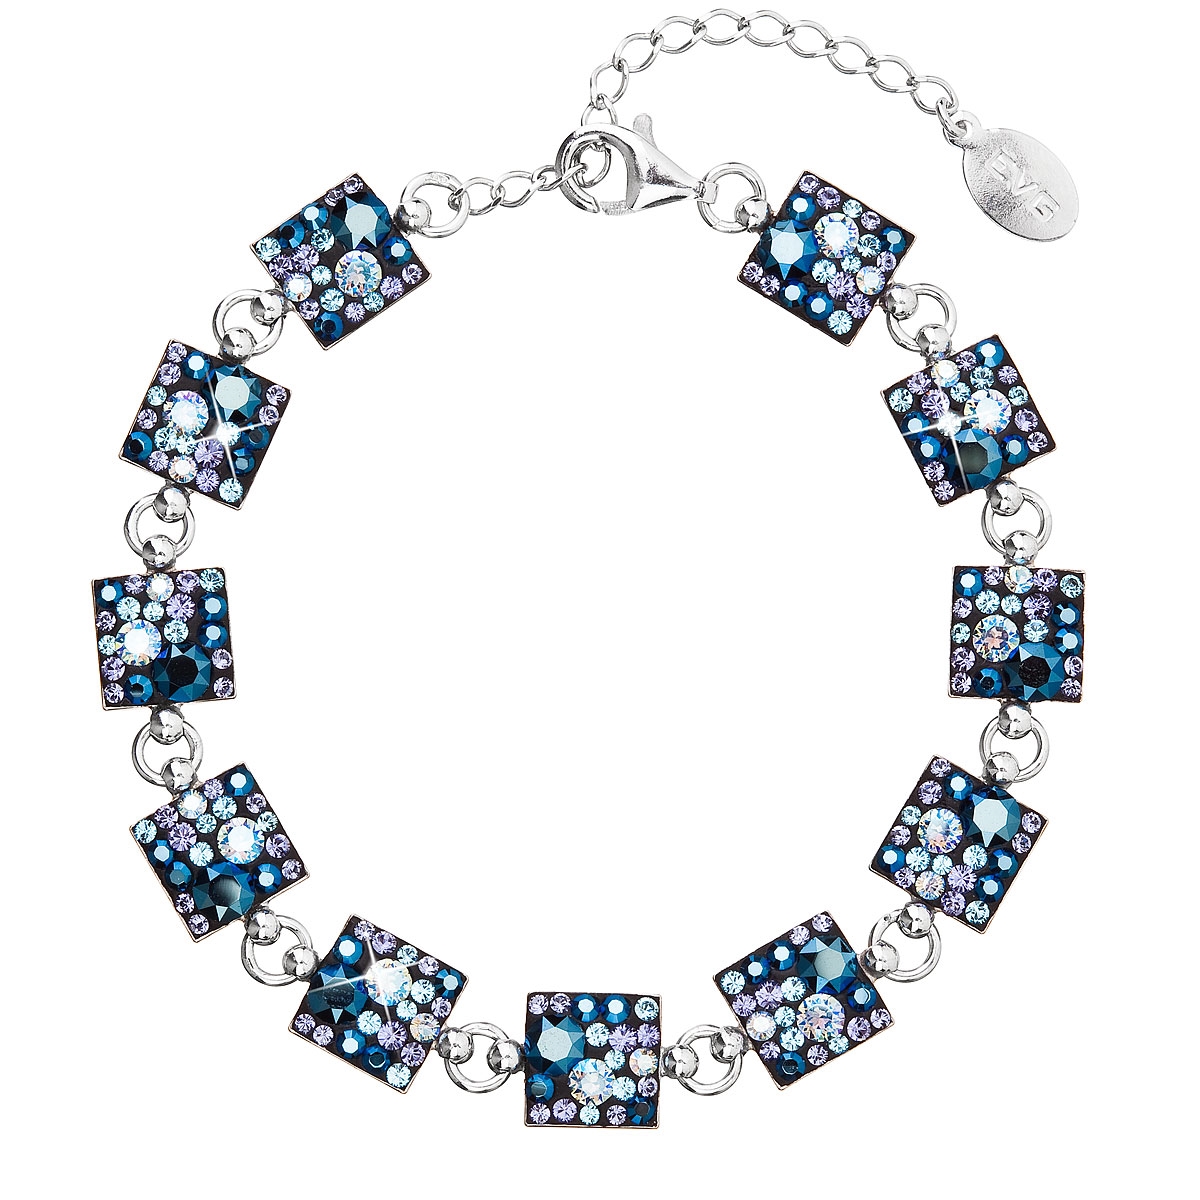 Strieborný náramok s kryštálmi Crystals from Swarovski ® Blue Style